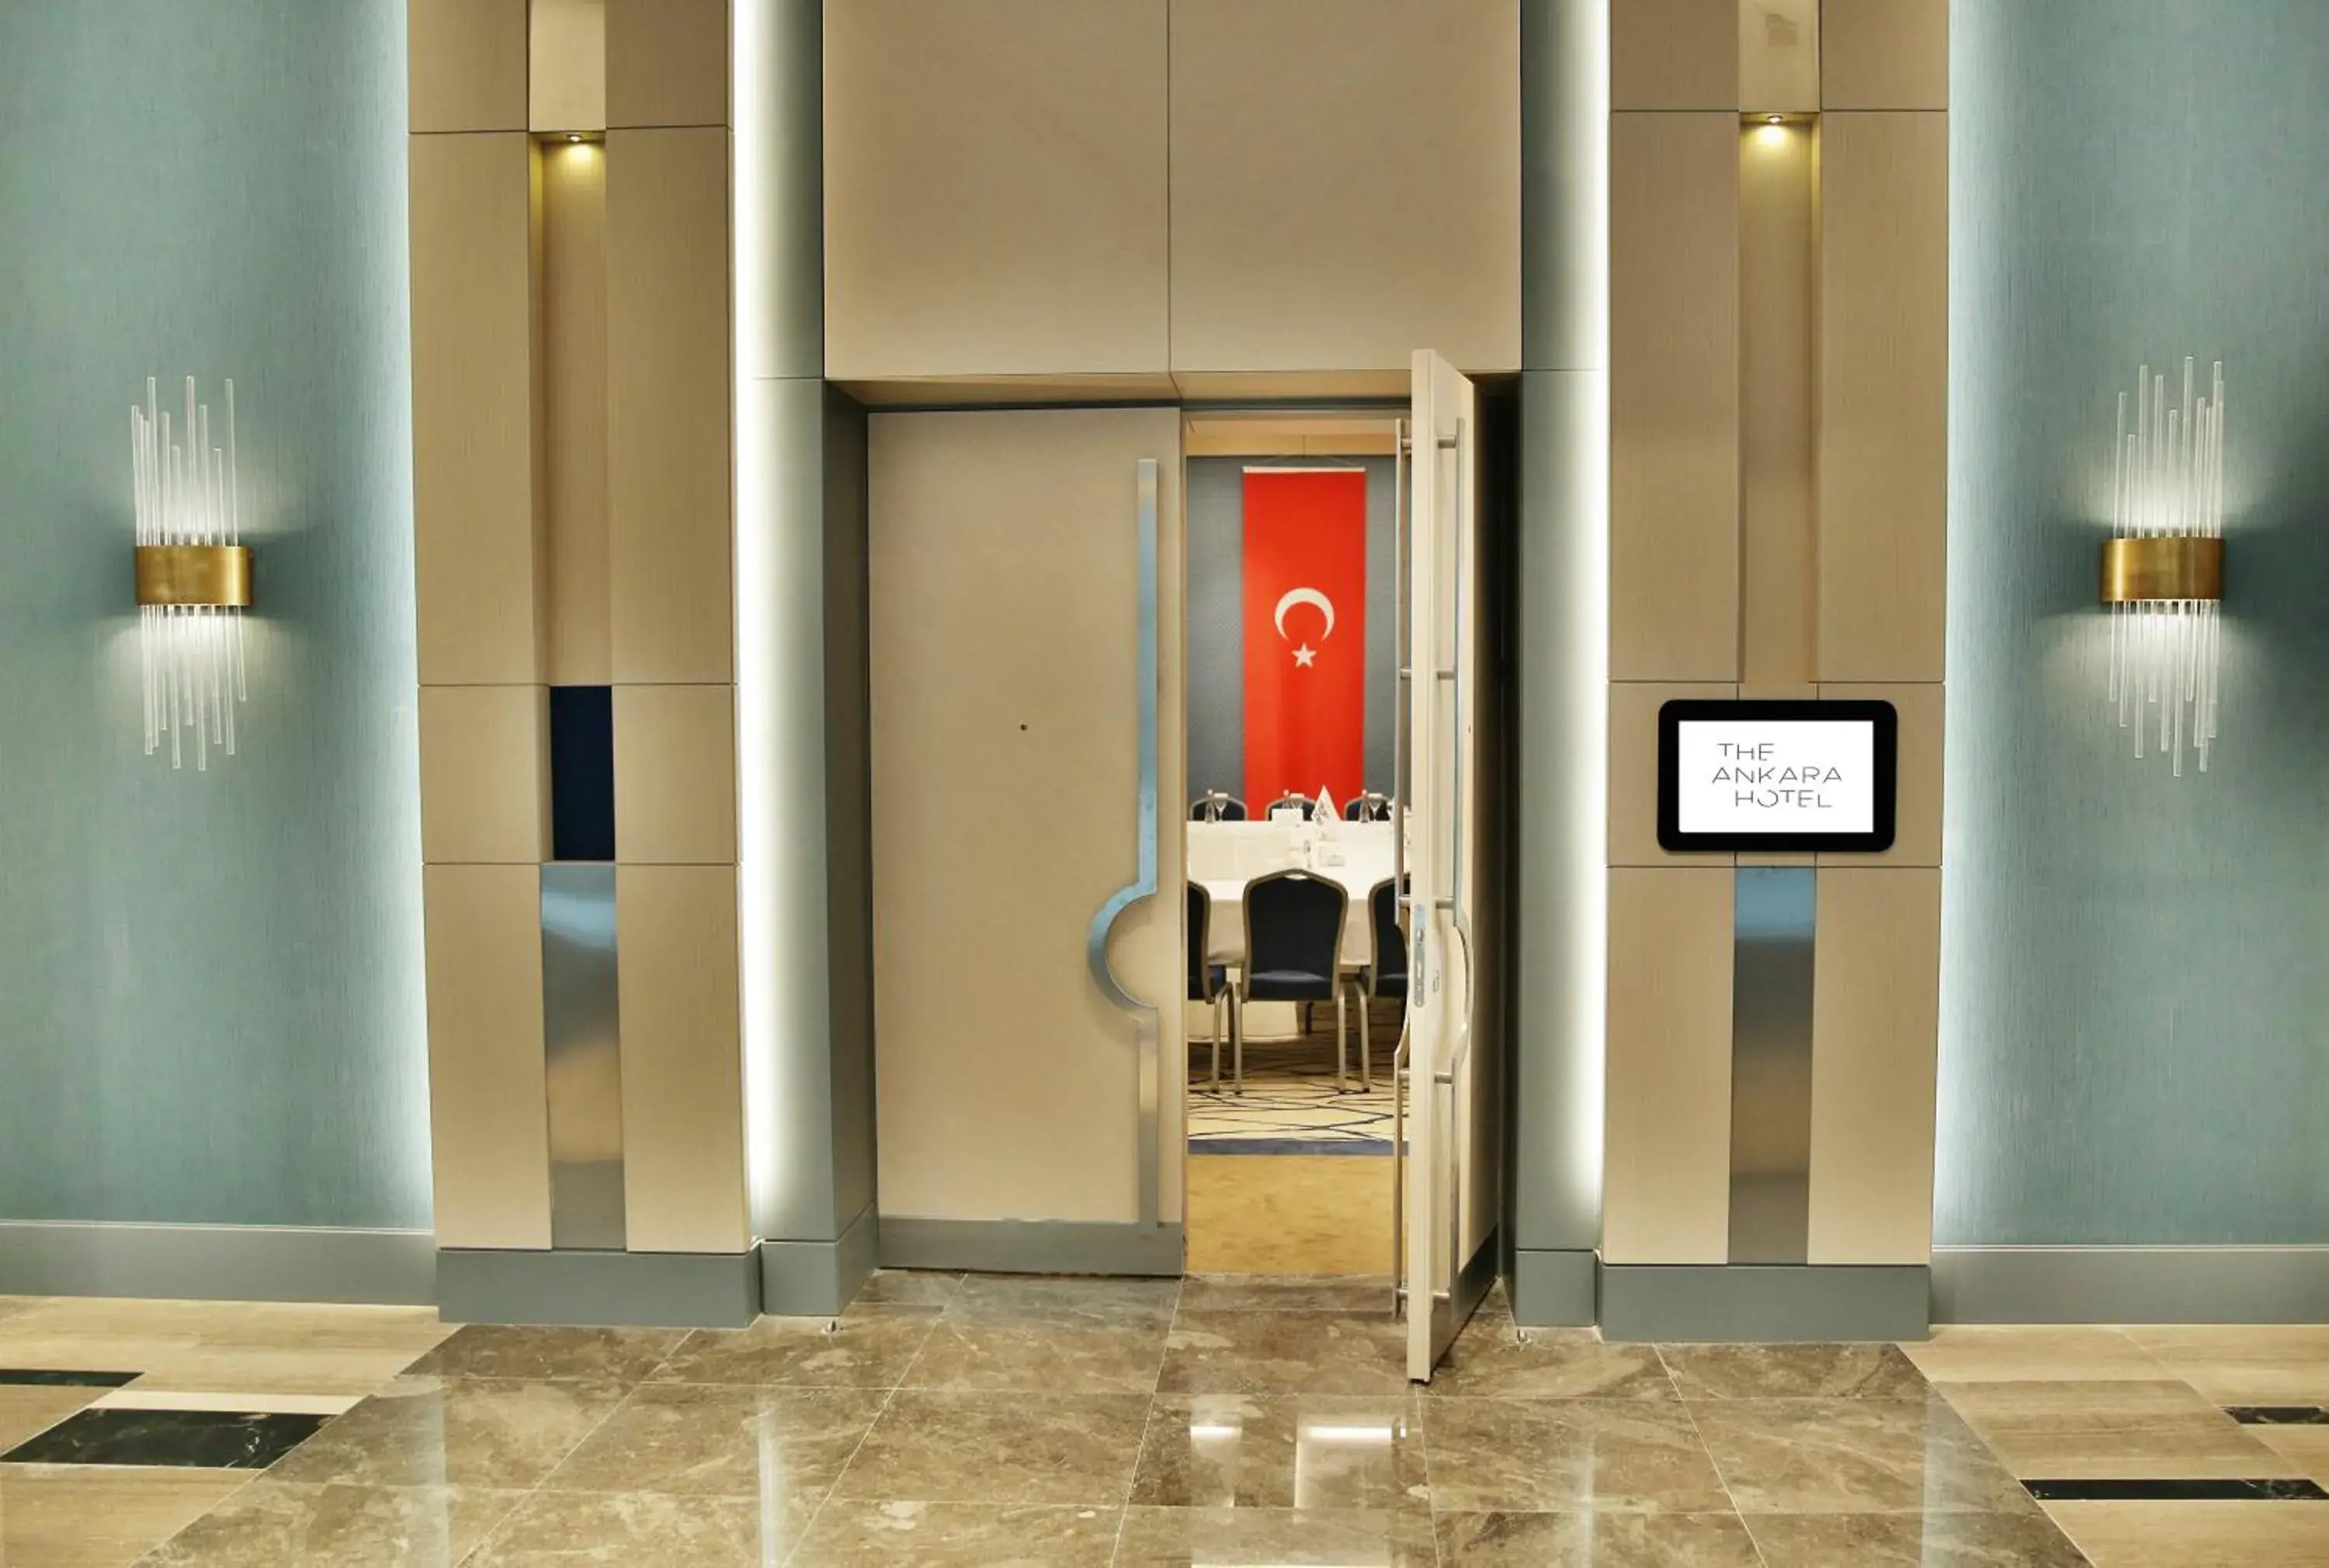 Other, Facade/Entrance in The Ankara Hotel